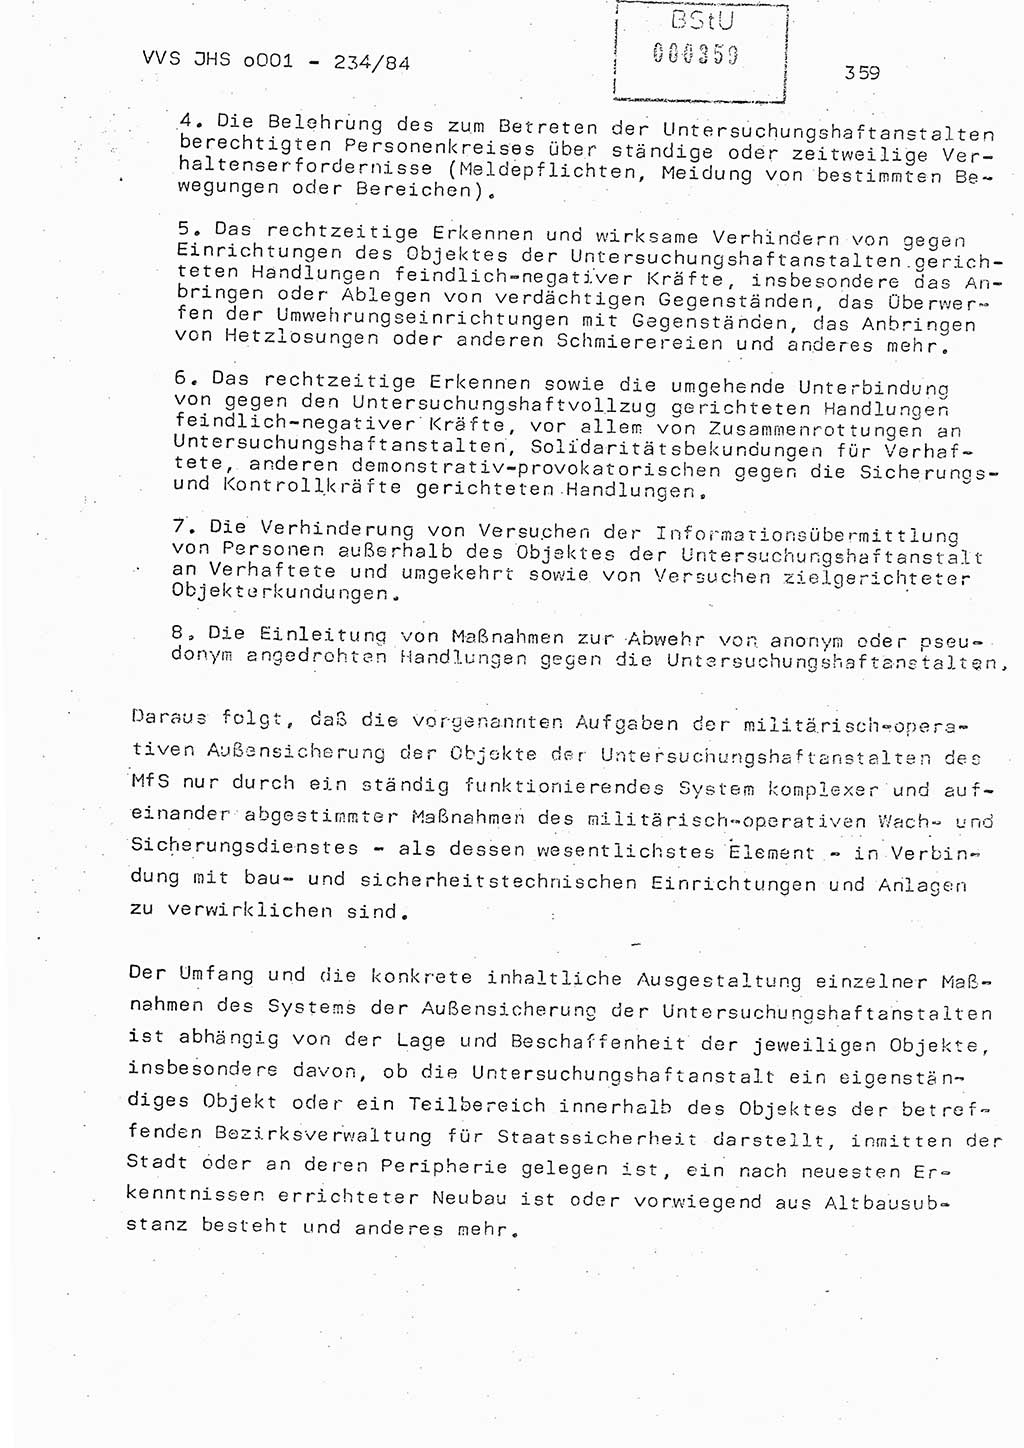 Dissertation Oberst Siegfried Rataizick (Abt. ⅩⅣ), Oberstleutnant Volkmar Heinz (Abt. ⅩⅣ), Oberstleutnant Werner Stein (HA Ⅸ), Hauptmann Heinz Conrad (JHS), Ministerium für Staatssicherheit (MfS) [Deutsche Demokratische Republik (DDR)], Juristische Hochschule (JHS), Vertrauliche Verschlußsache (VVS) o001-234/84, Potsdam 1984, Seite 359 (Diss. MfS DDR JHS VVS o001-234/84 1984, S. 359)